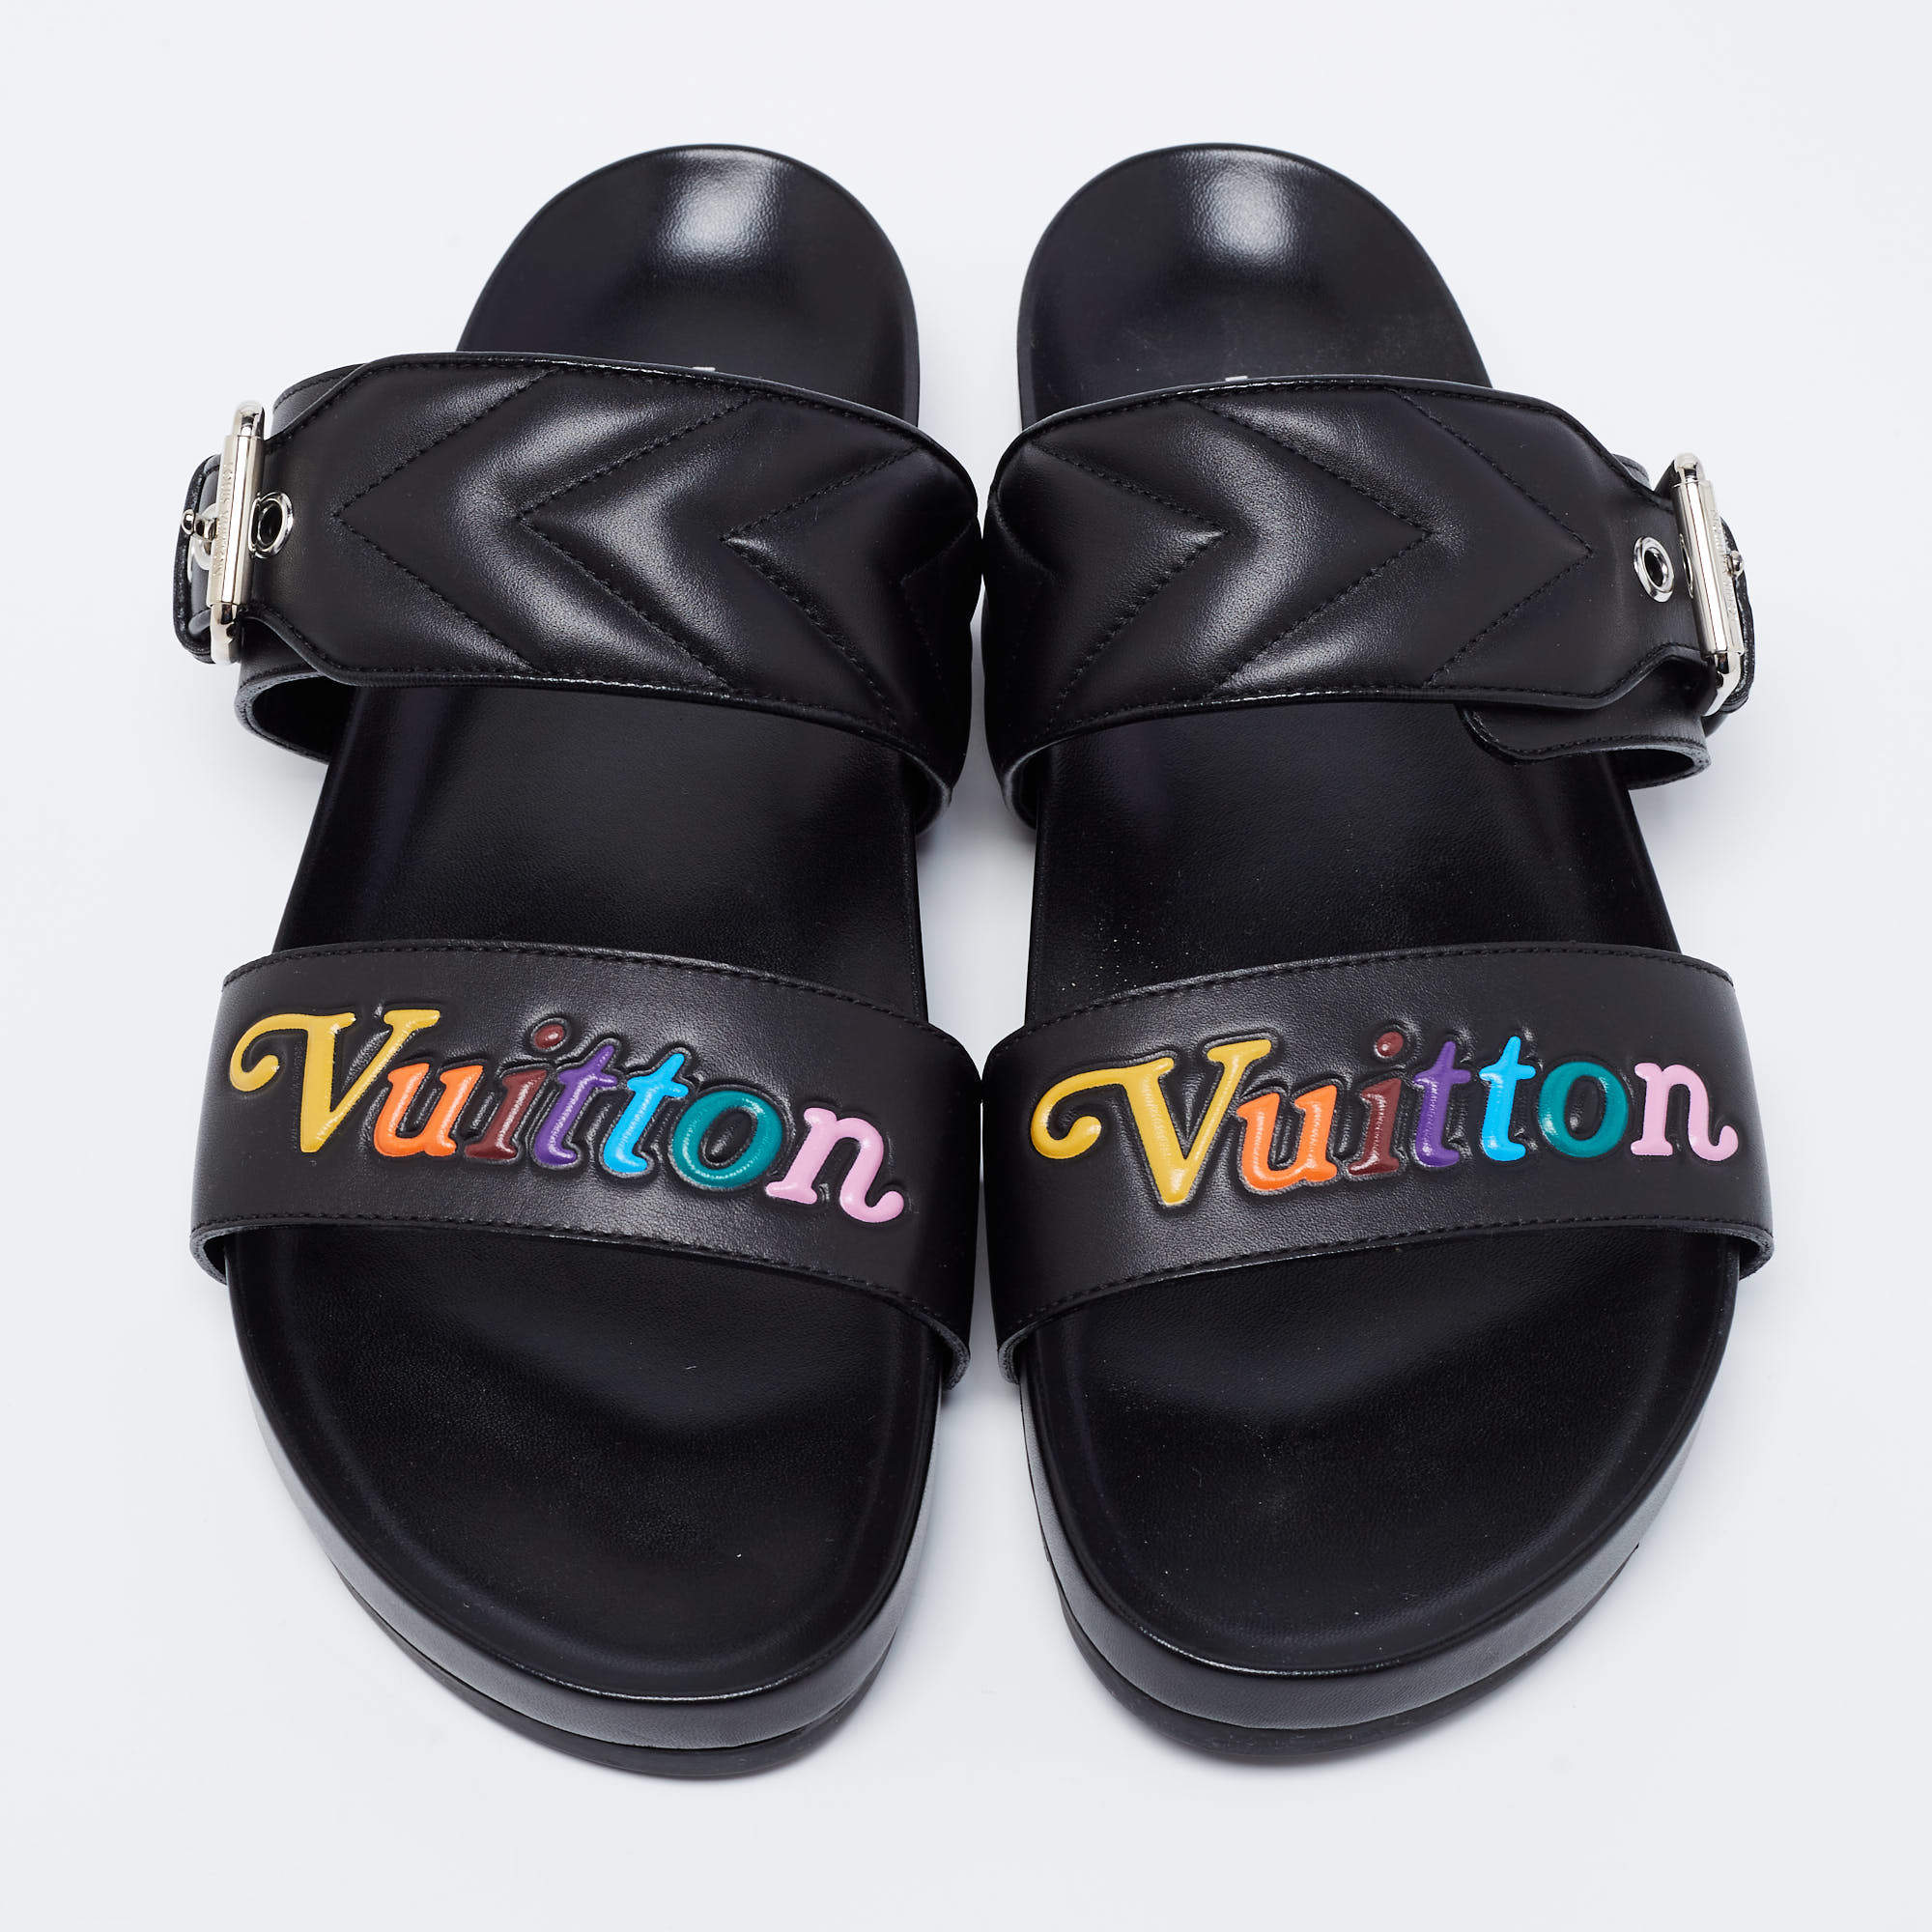 Louis Vuitton 2019 New Wave Bom Dia Slides - Black Sandals, Shoes